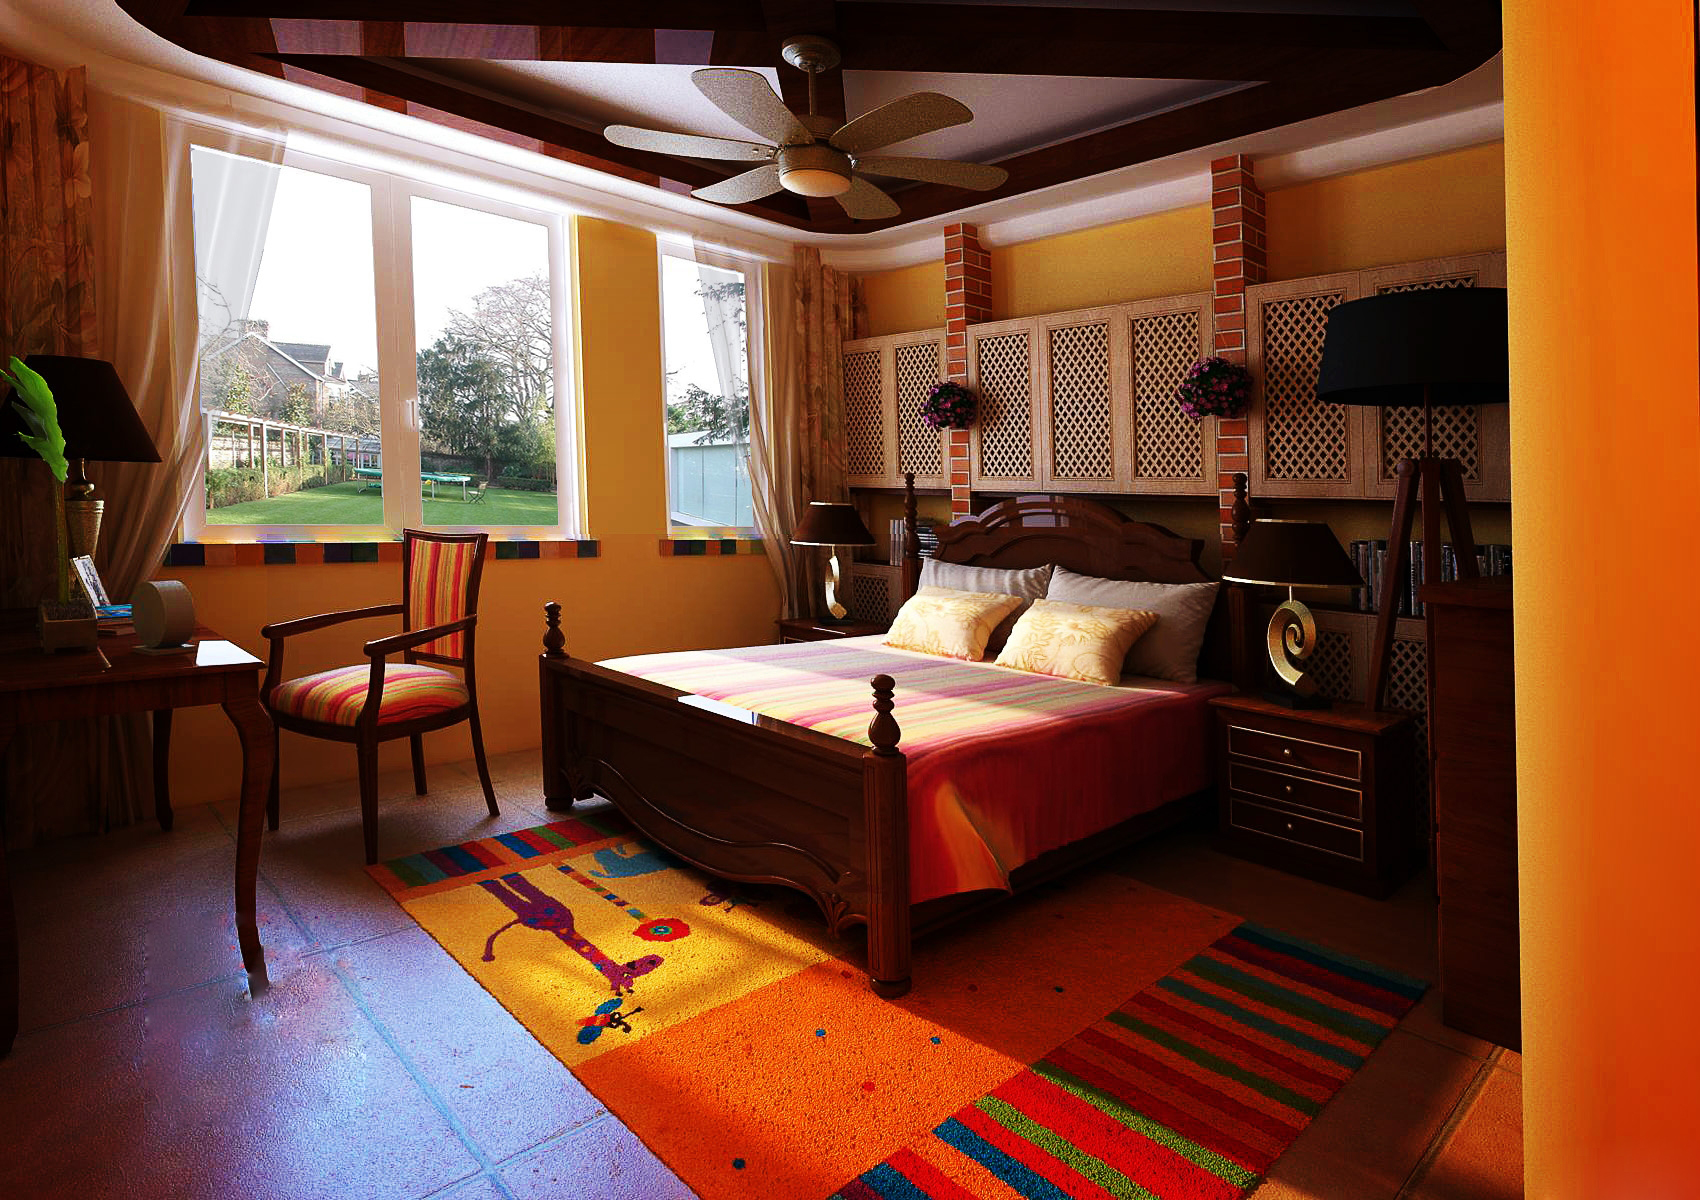 三居 别墅 阿拉奇设计 美式田园 卧室图片来自阿拉奇设计在美式田园别墅装修的分享